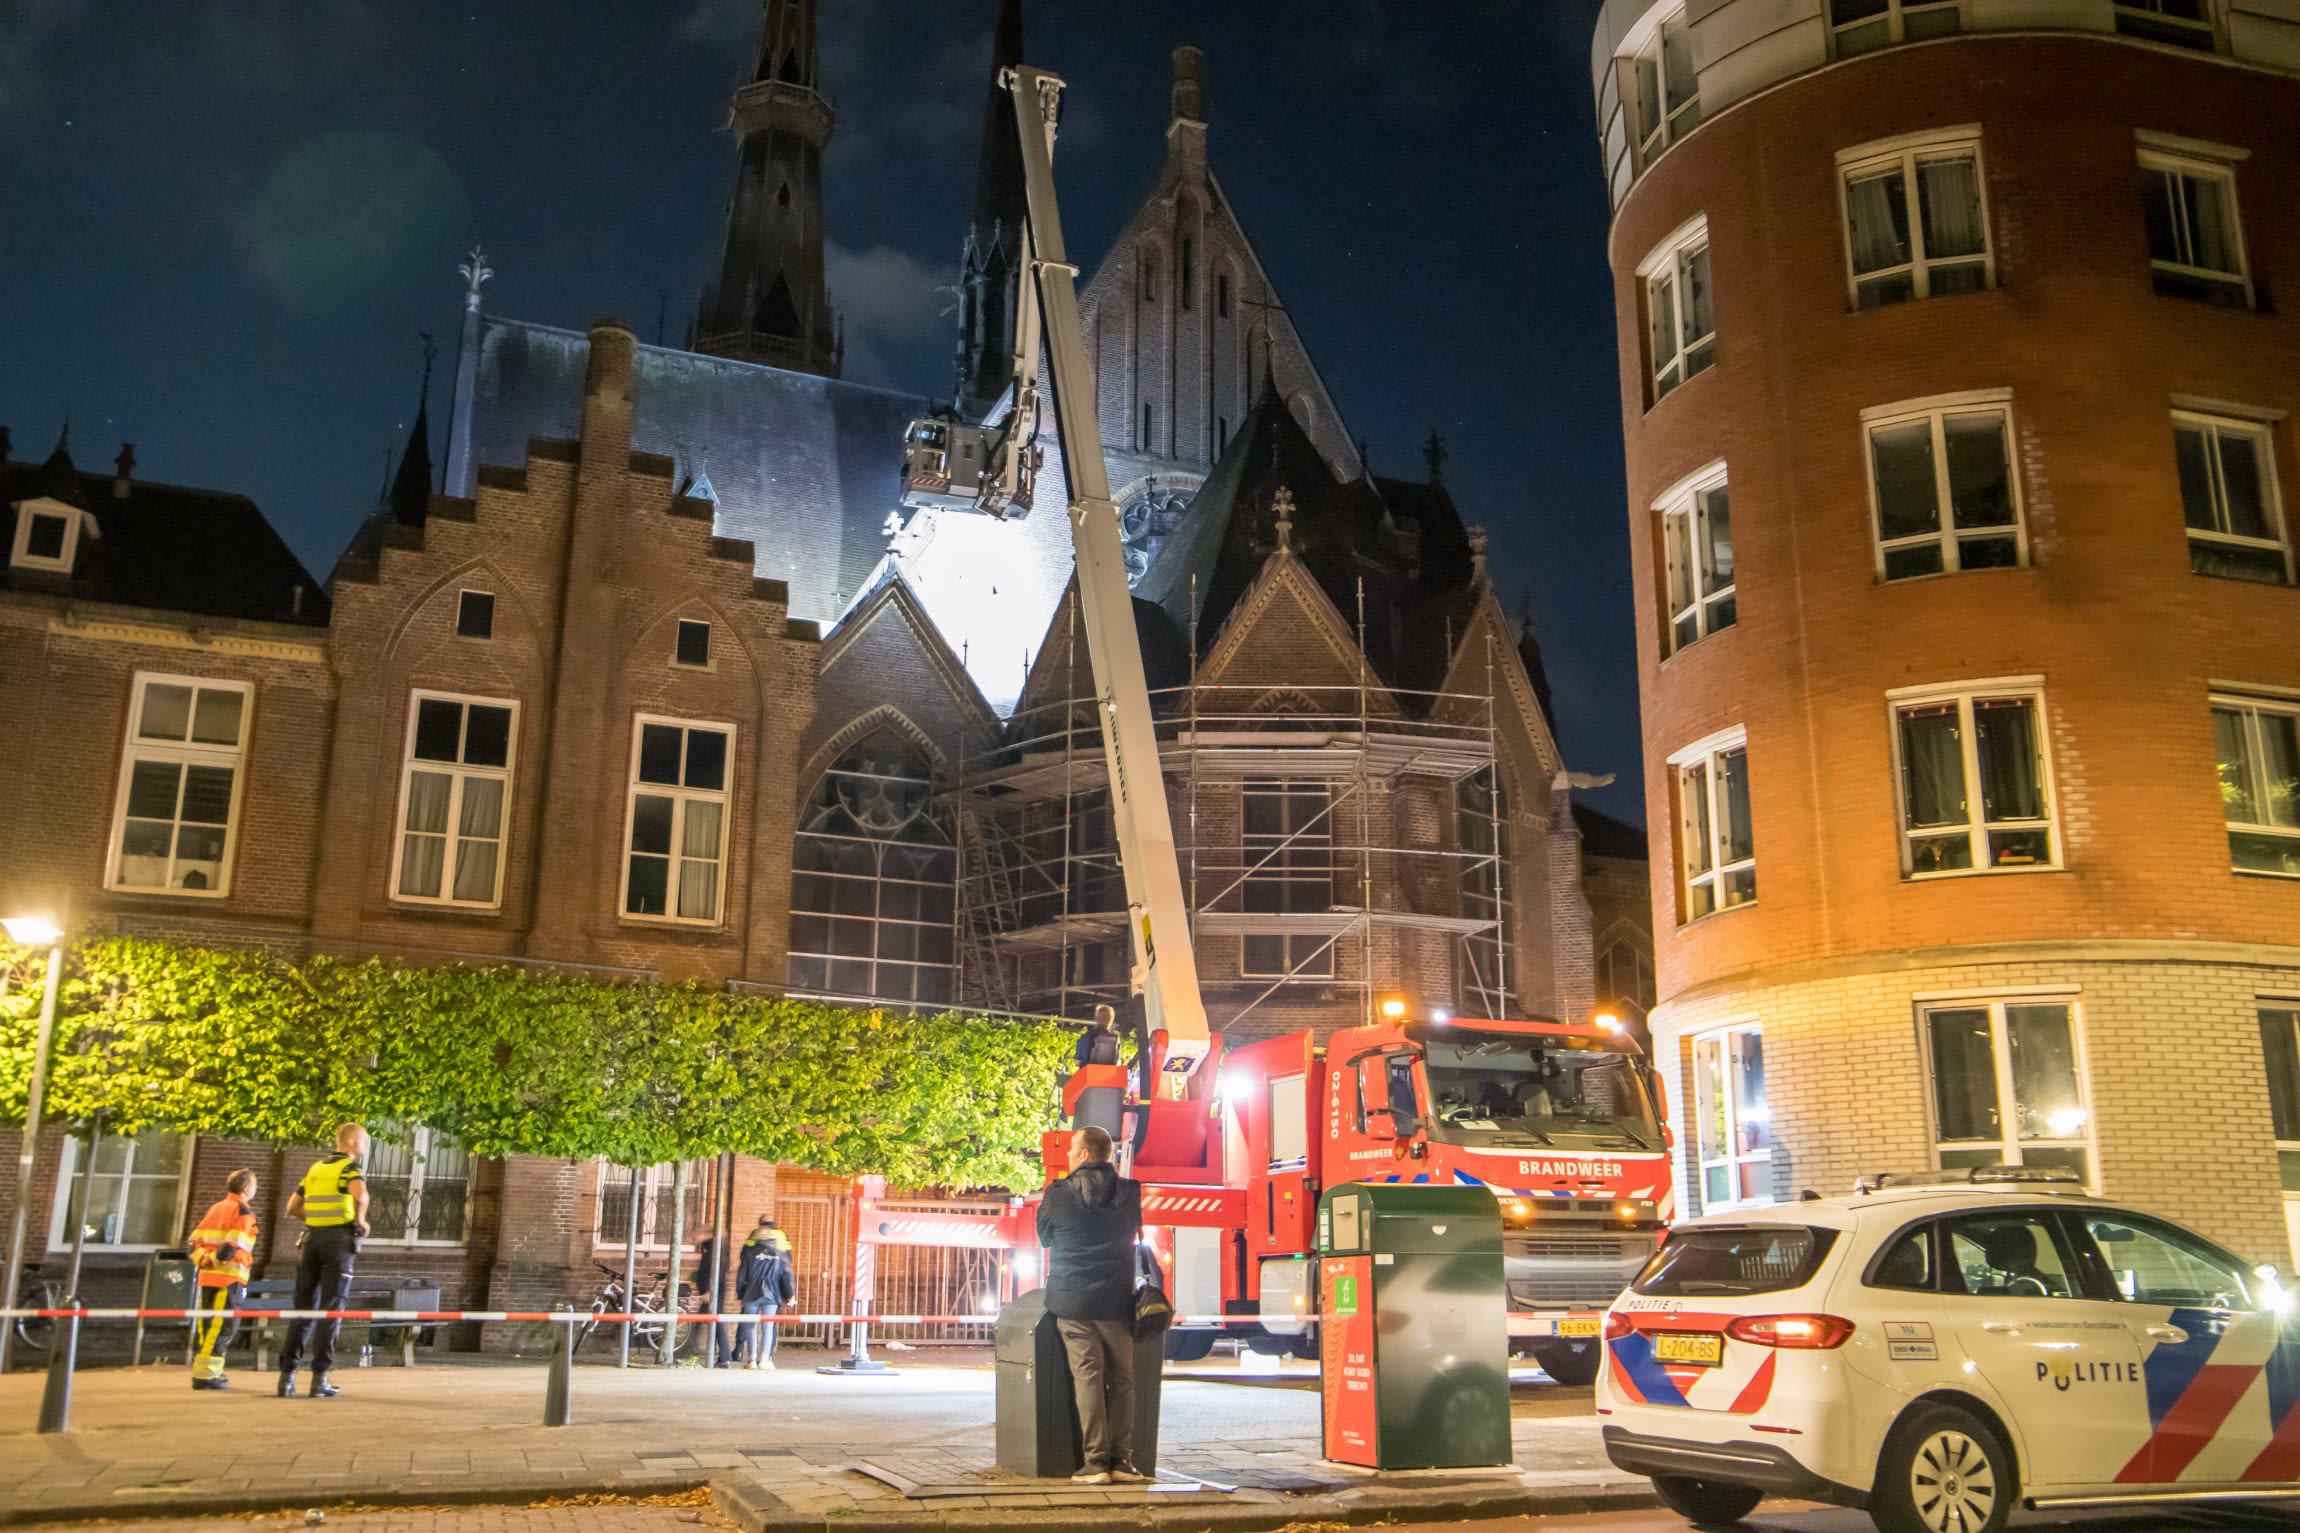 Dode man (33) gevonden op dak van kerk in Leeuwarden, mogelijk koperdief